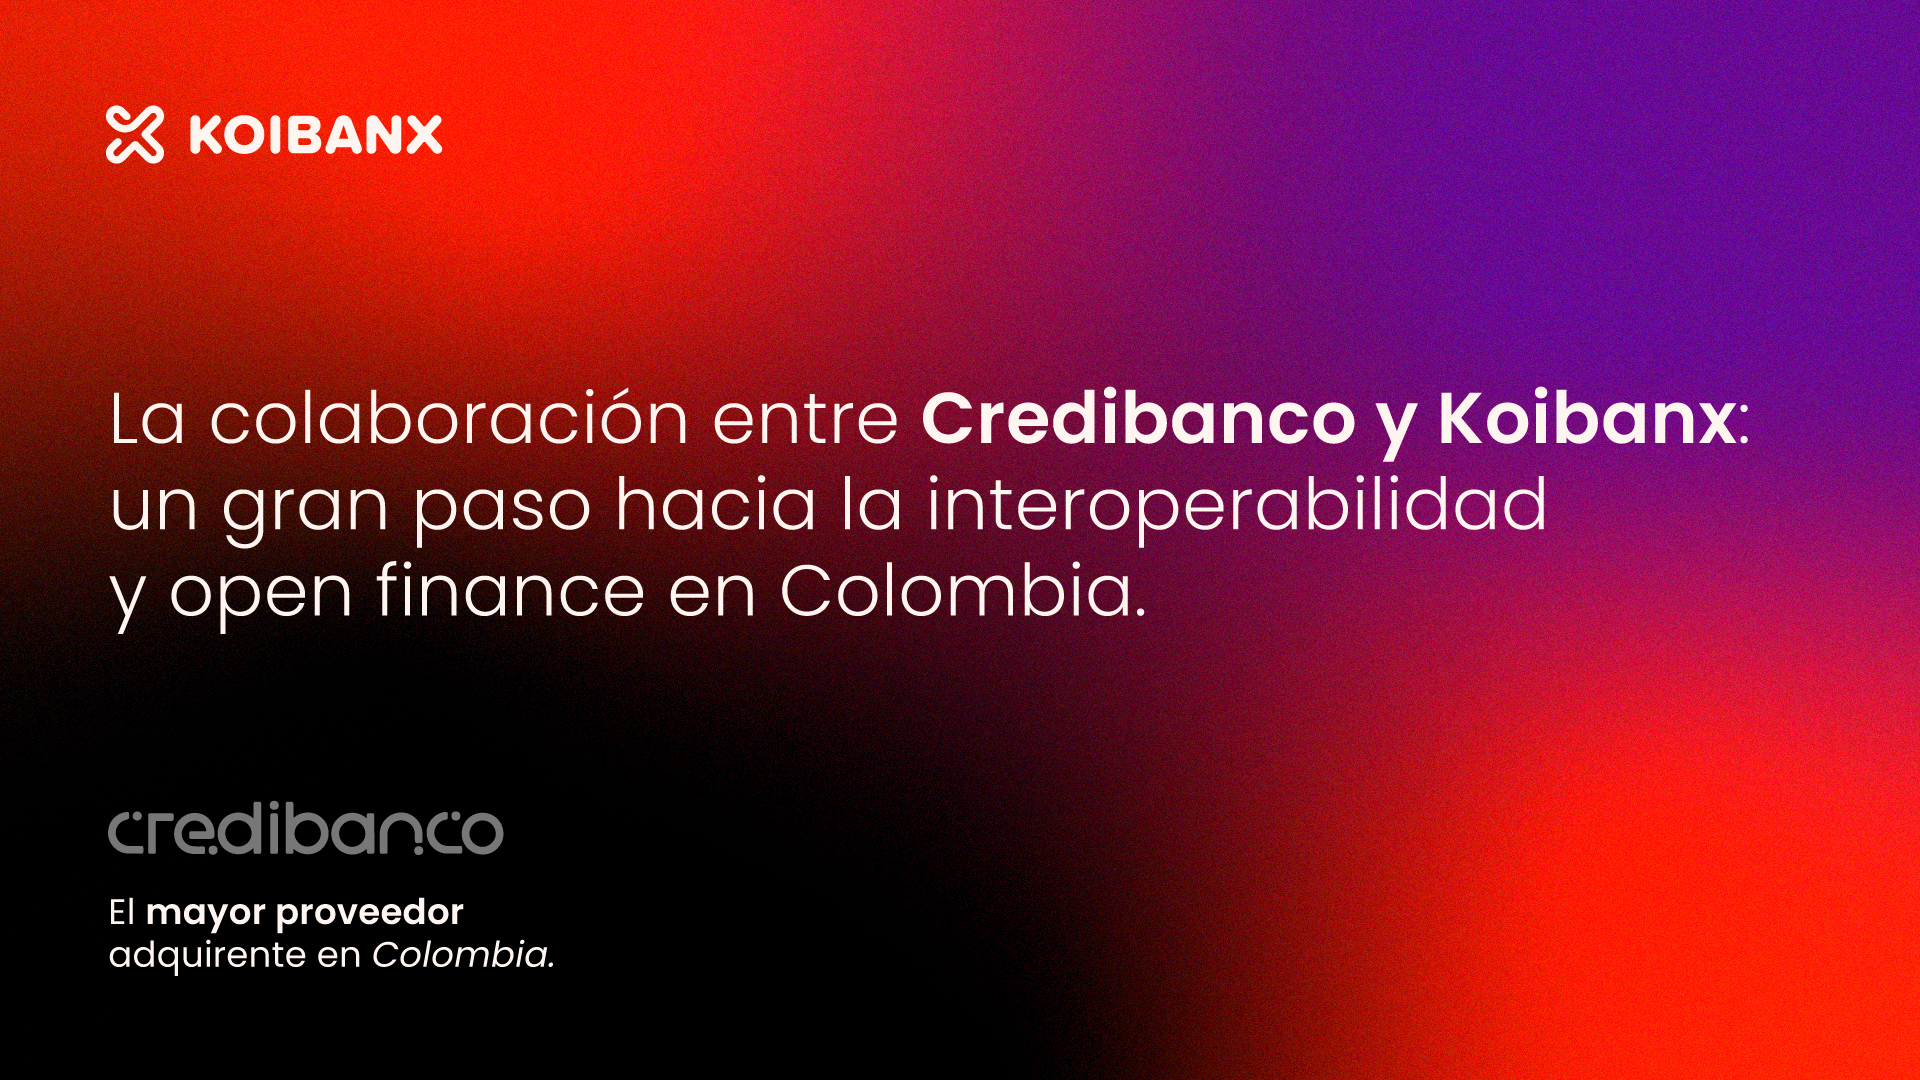 Credibanco y Koibanx impulsan la interoperabilidad de los medios de pago en Colombia